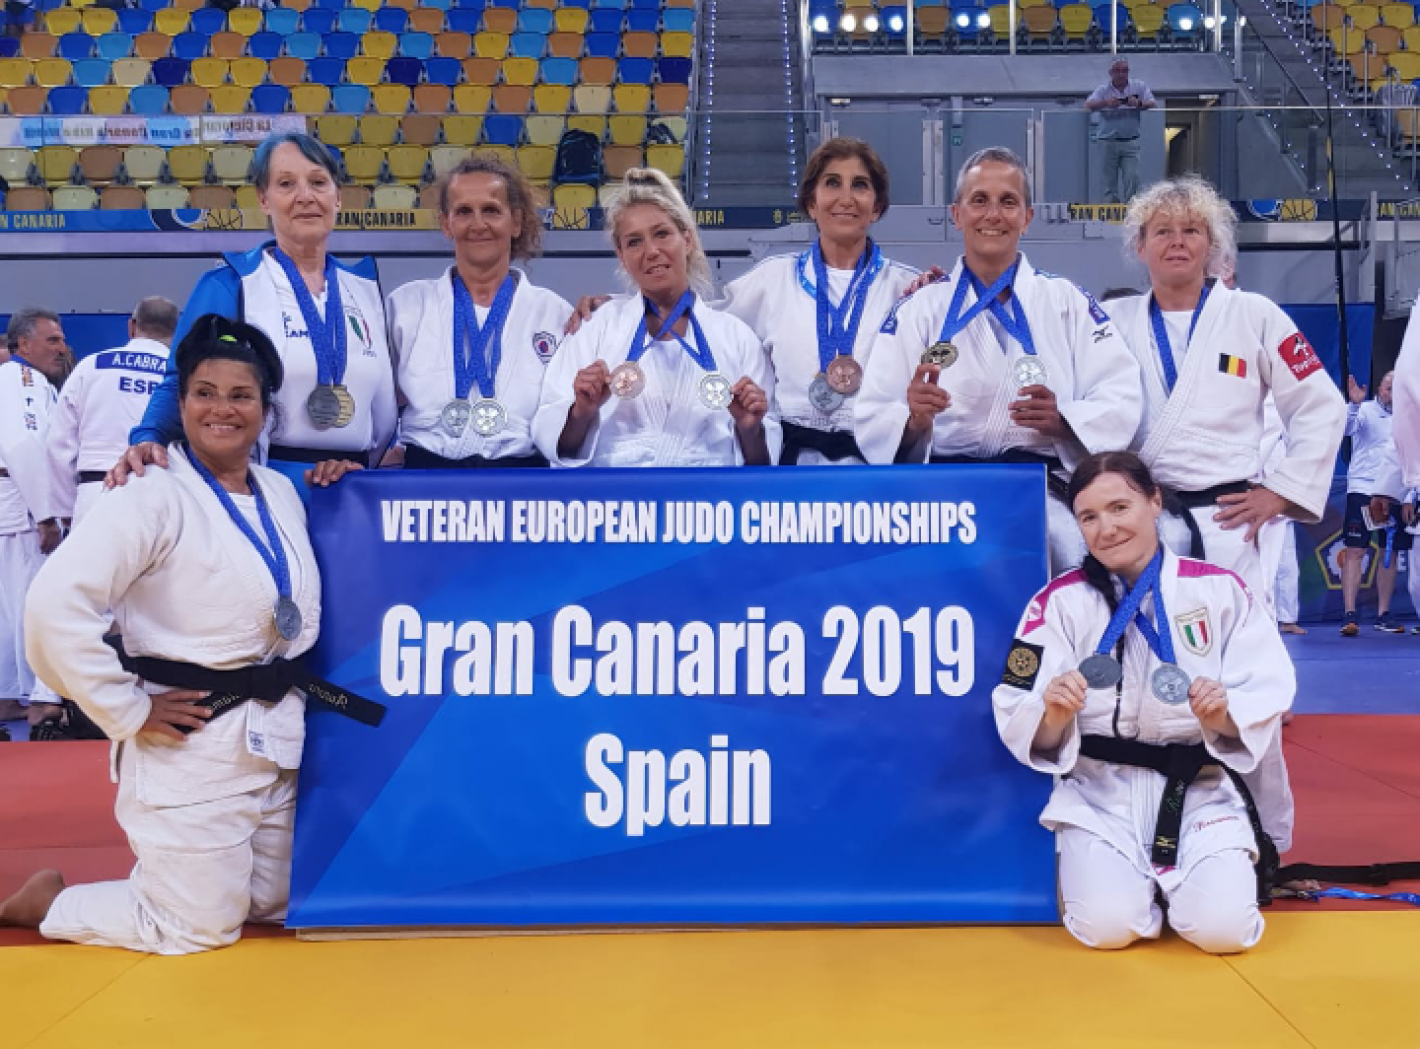 images/veneto/Judo/2019/medium/campionati_europei_master_2019.png